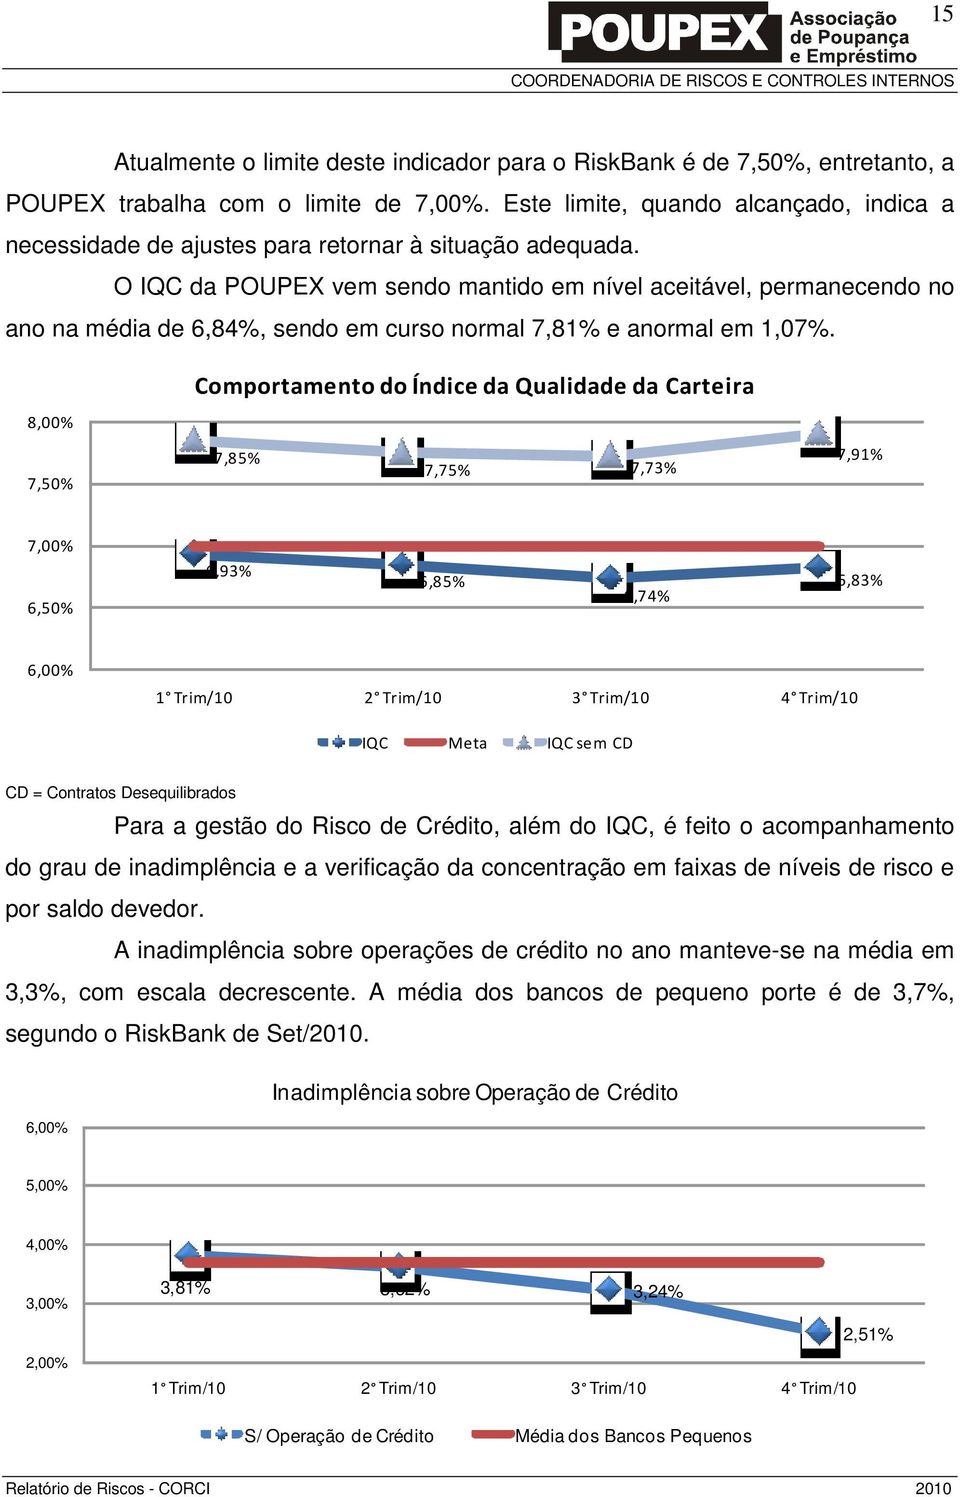 O IQC da POUPEX vem sendo mantido em nível aceitável, permanecendo no ano na média de 6,84%, sendo em curso normal 7,81% e anormal em 1,07%.